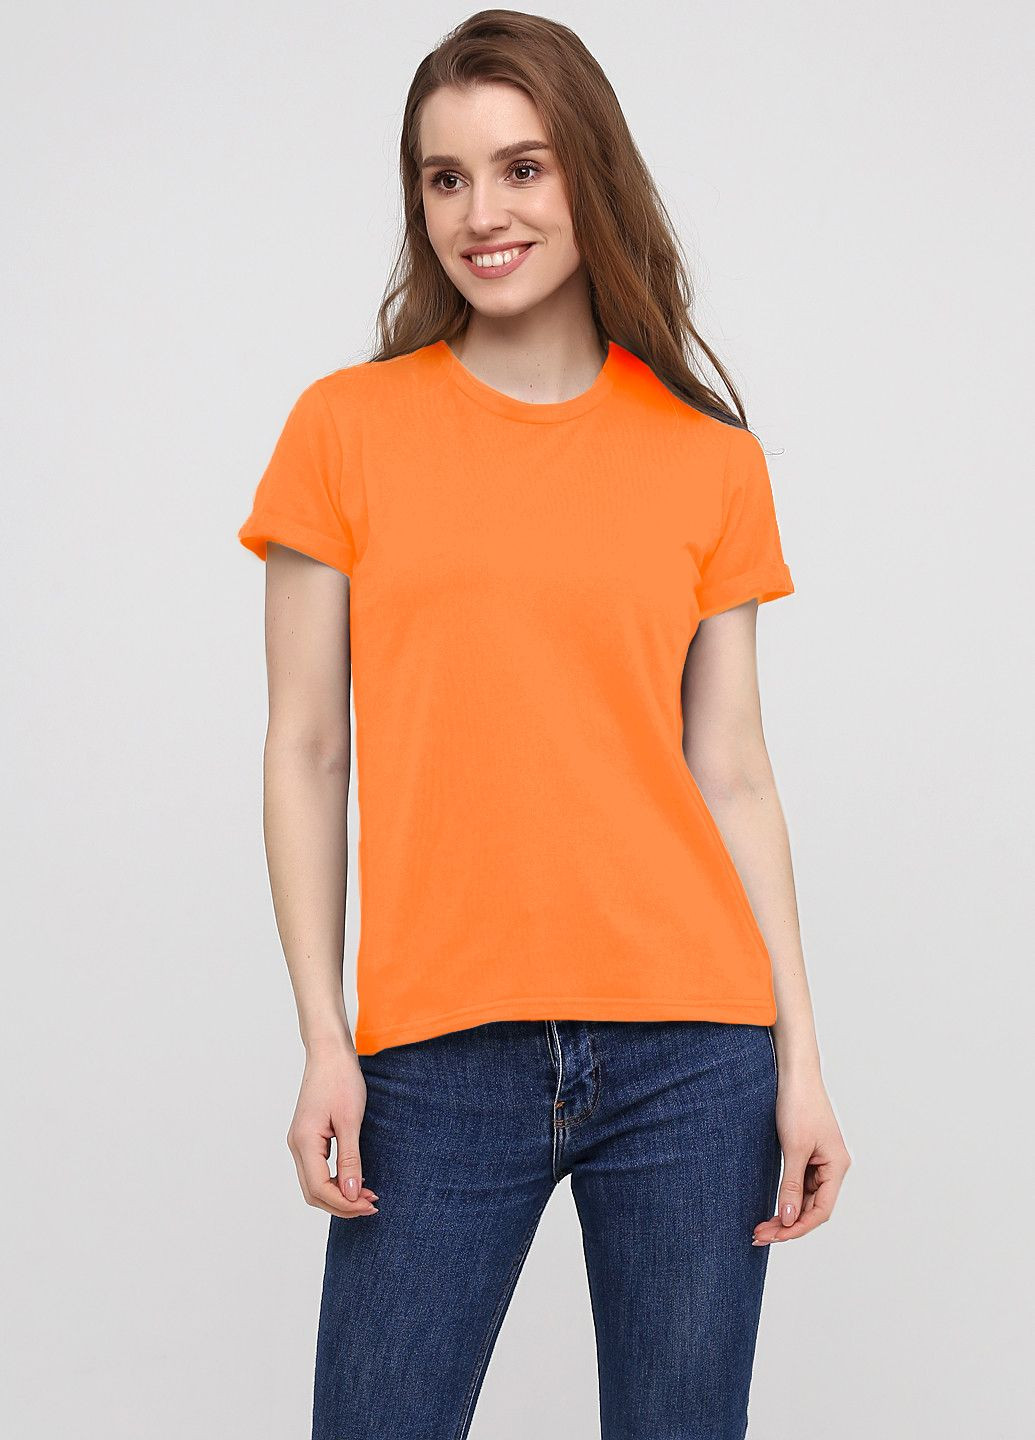 Оранжевая футболка женская 441-24 оранжевая с коротким рукавом Malta